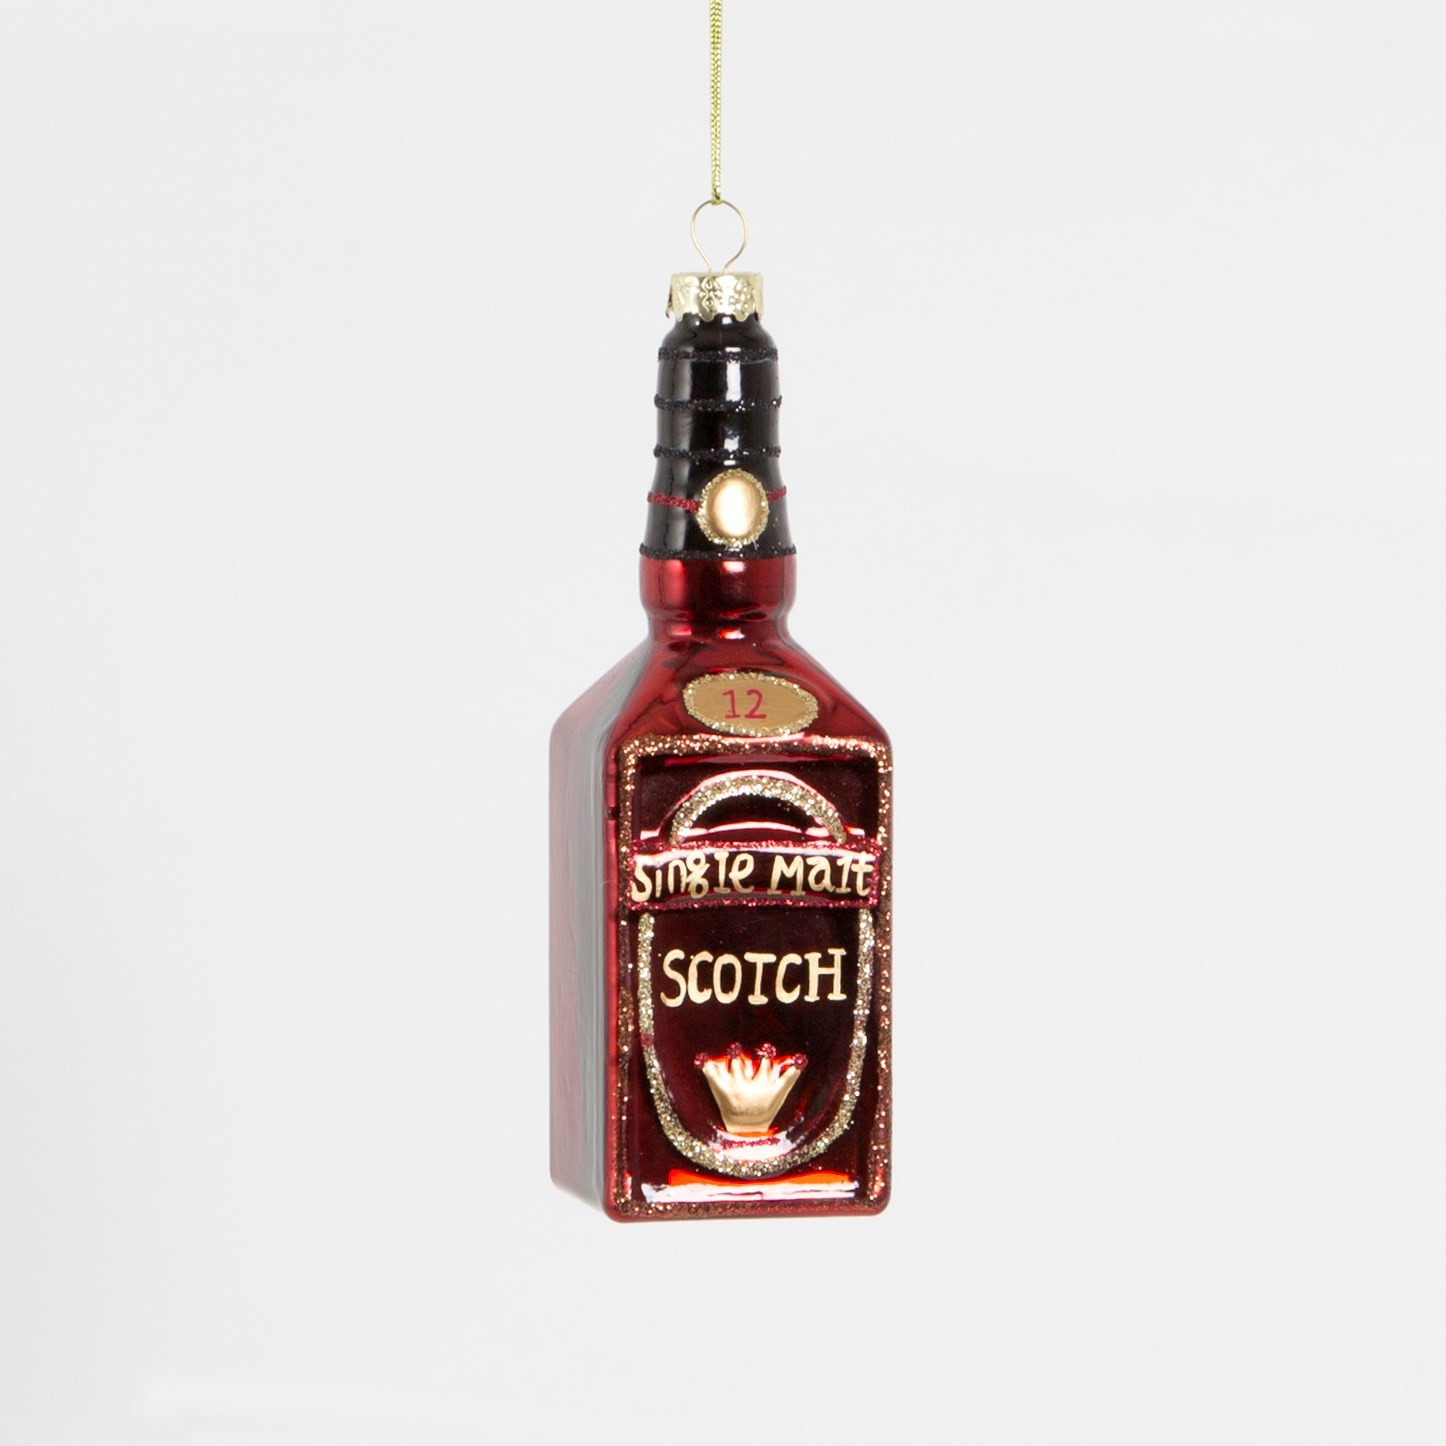 1 décoration de Noël - Bouteille de Scotch - Happy Family